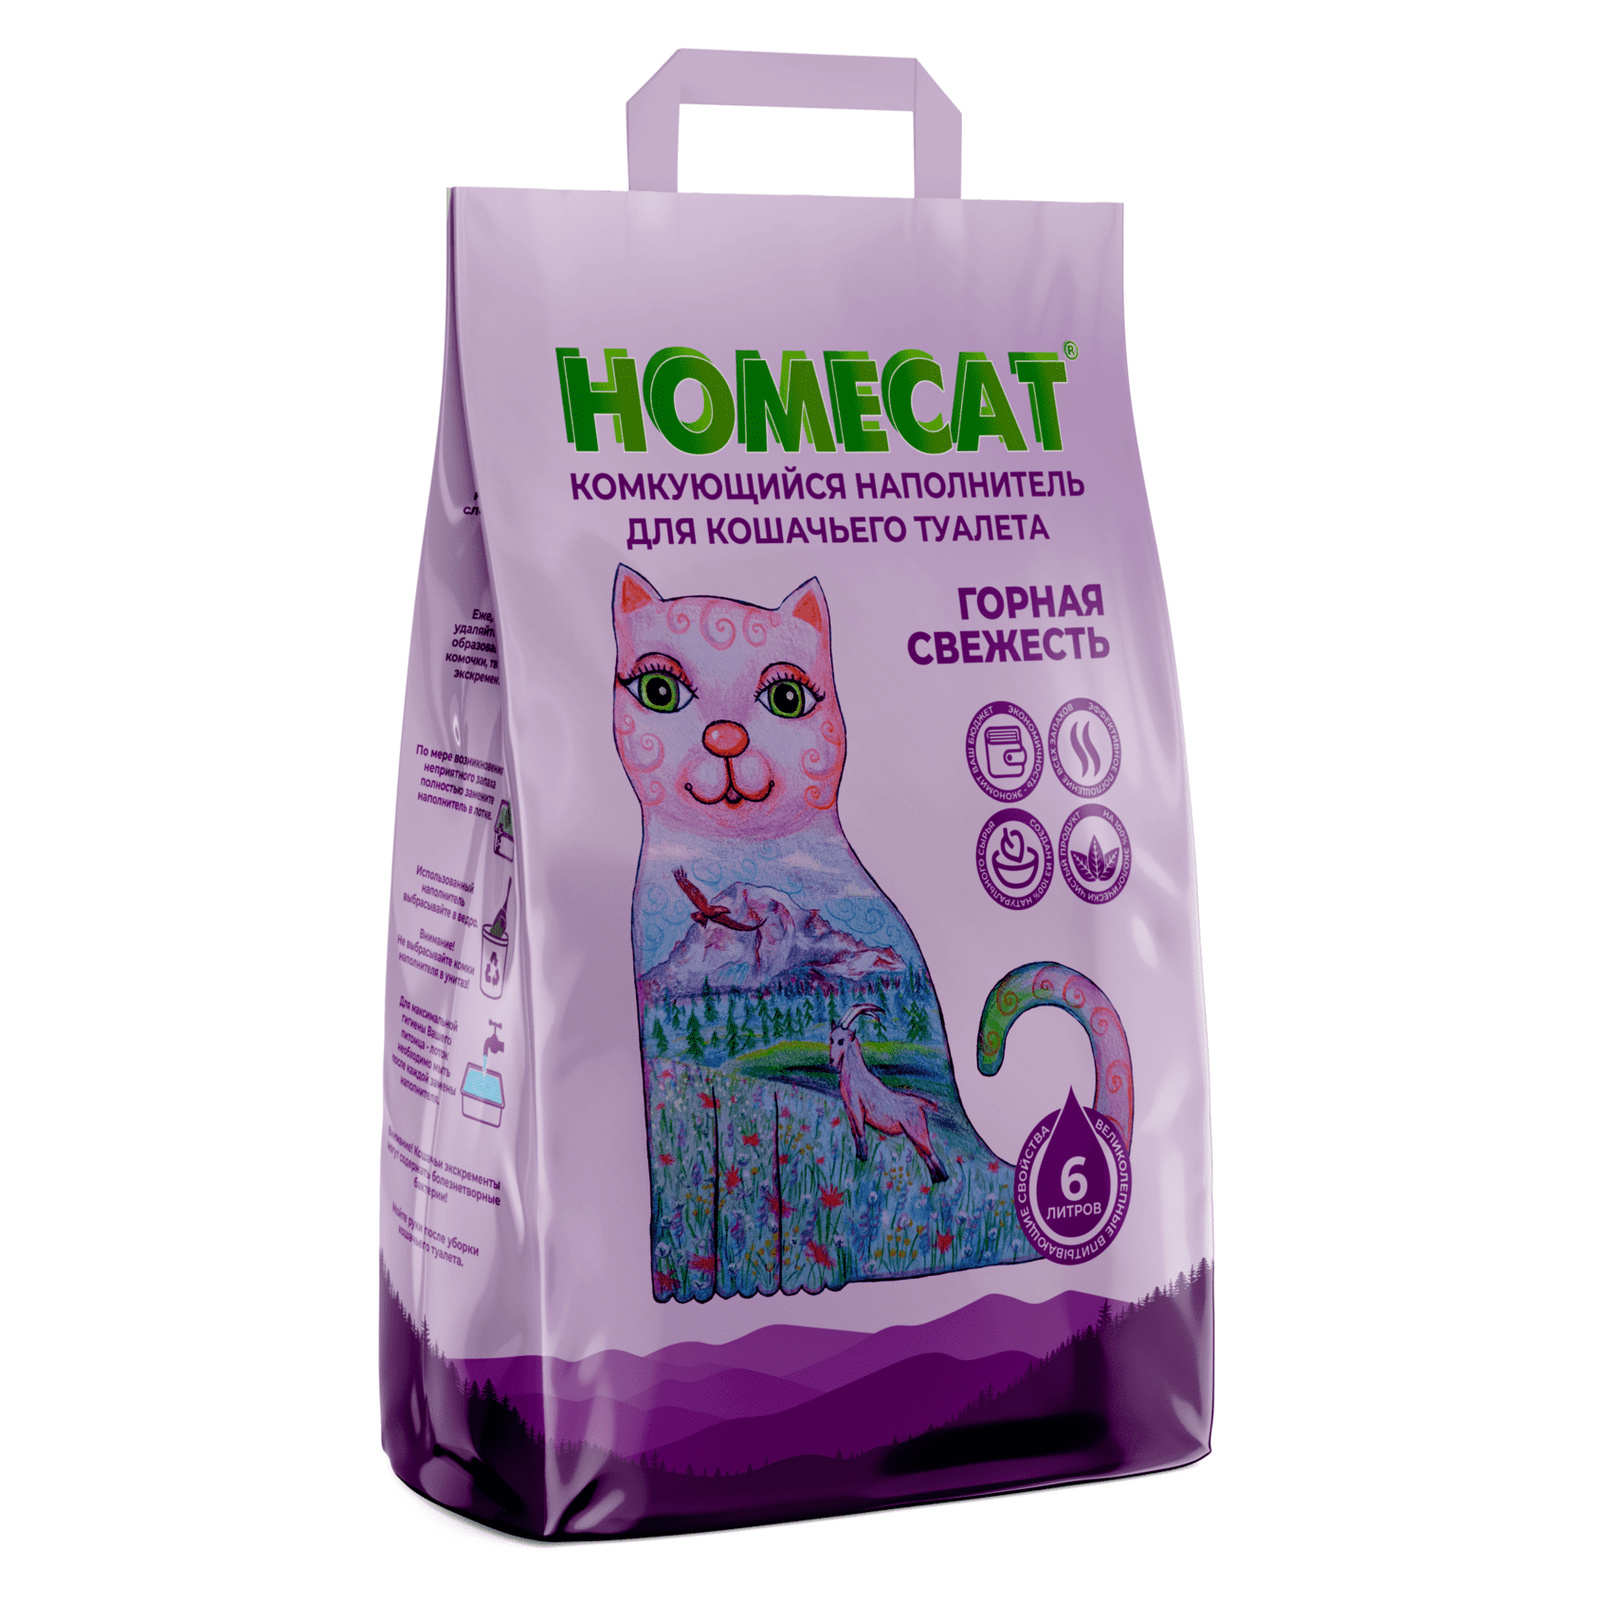 Homecat наполнитель Homecat наполнитель комкующийся наполнитель (10 кг) homecat наполнитель homecat наполнитель комкующийся наполнитель для кошачьих туалетов с ароматом молока 5 1 кг